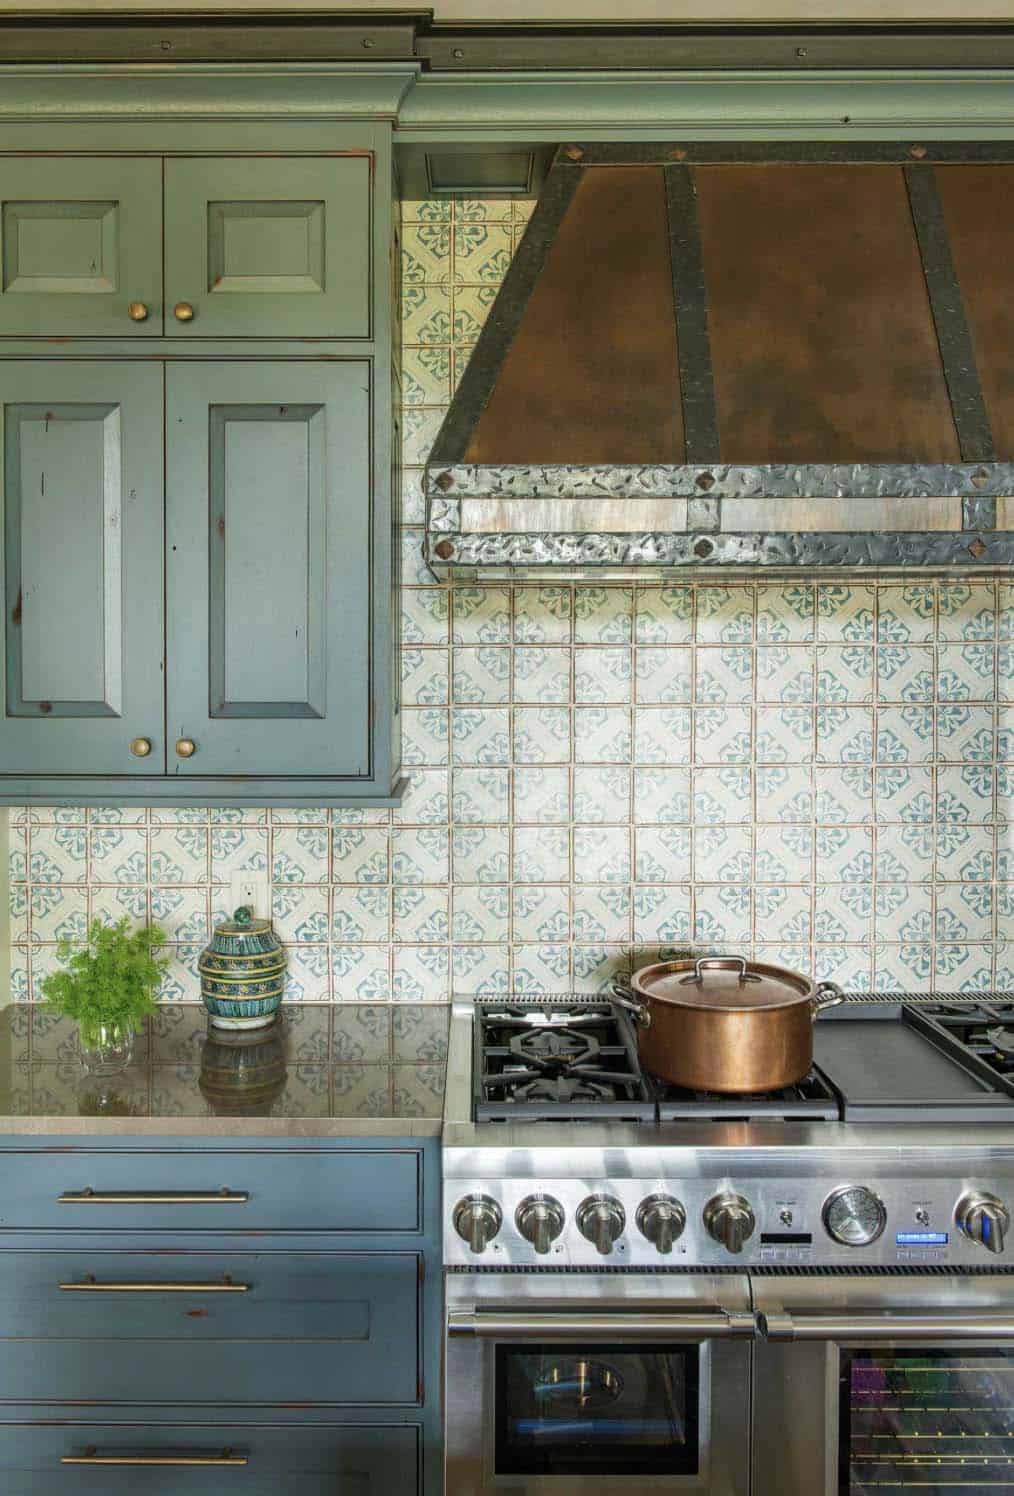 rustic kitchen with a patterned backsplash tile